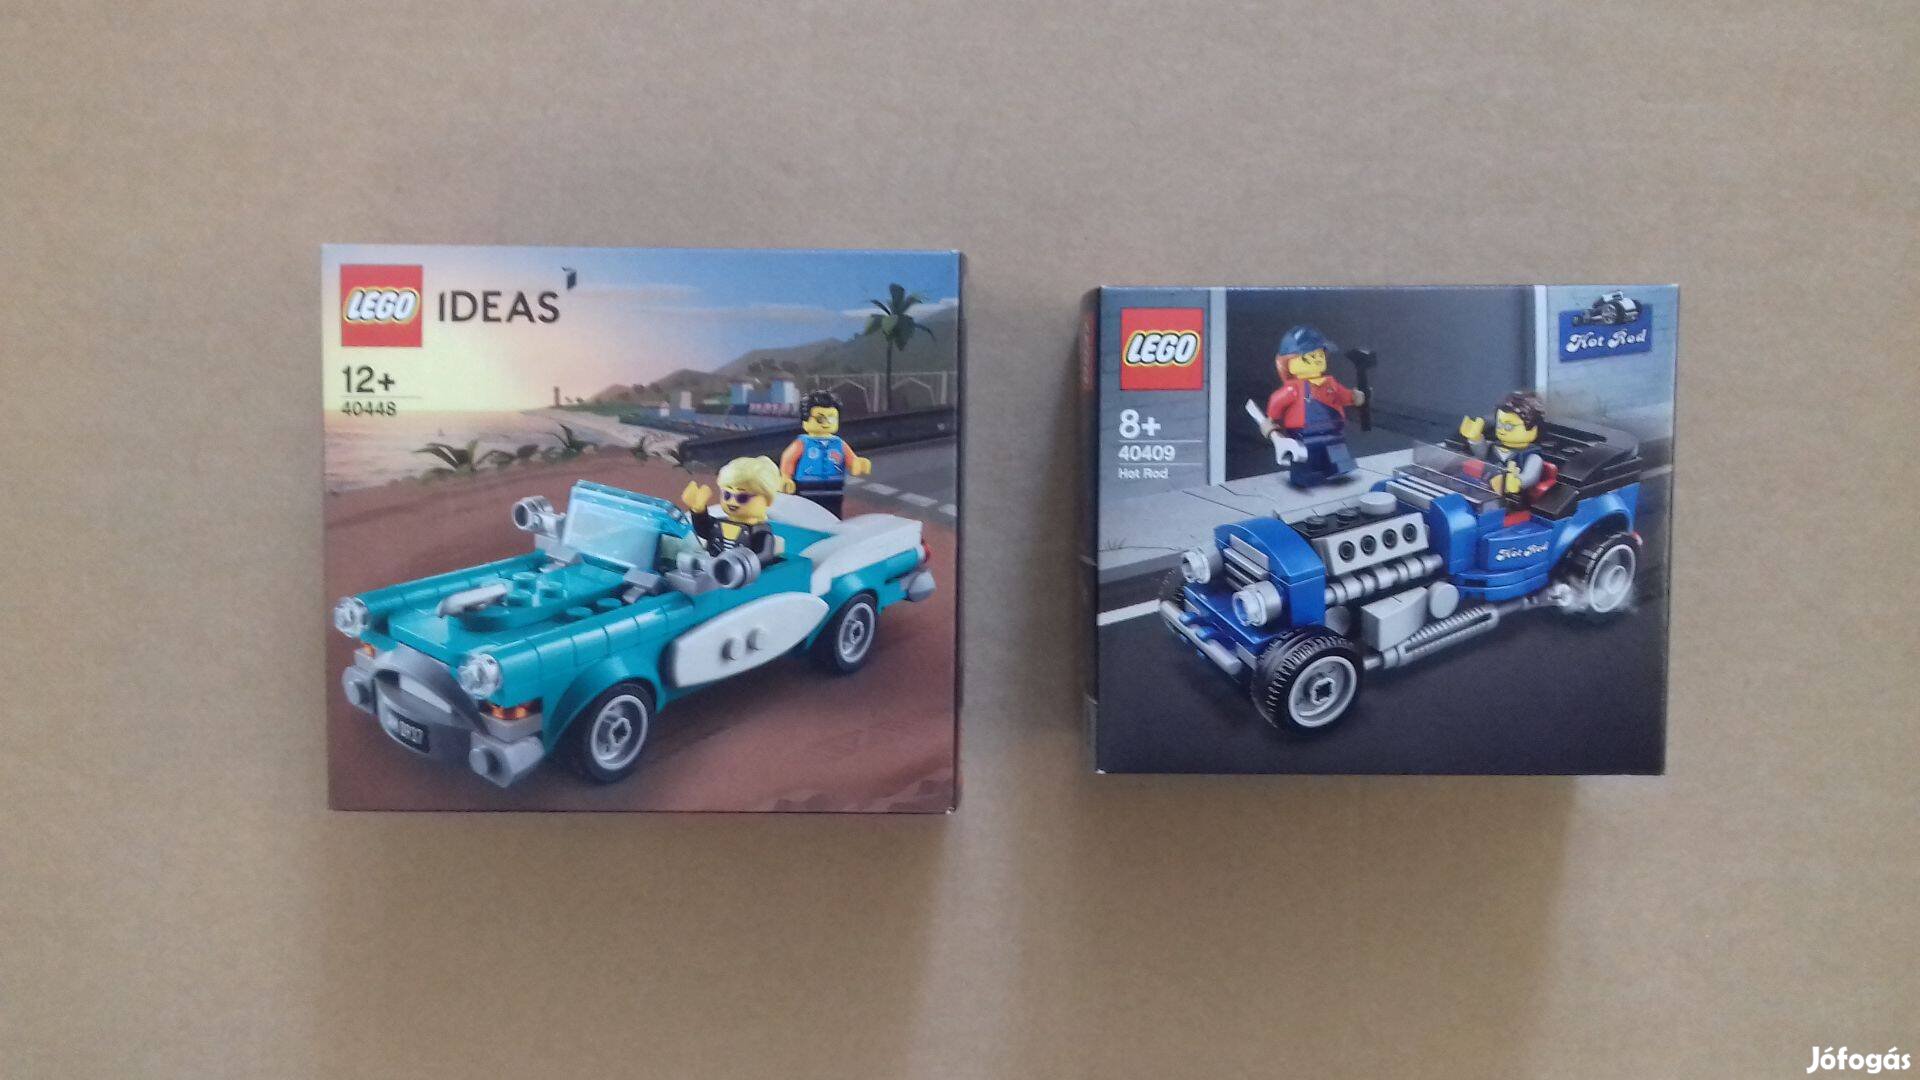 Új LEGO Ideas 40448 Veterán jármű + 40409 Hot Rod Creator City Foxárba